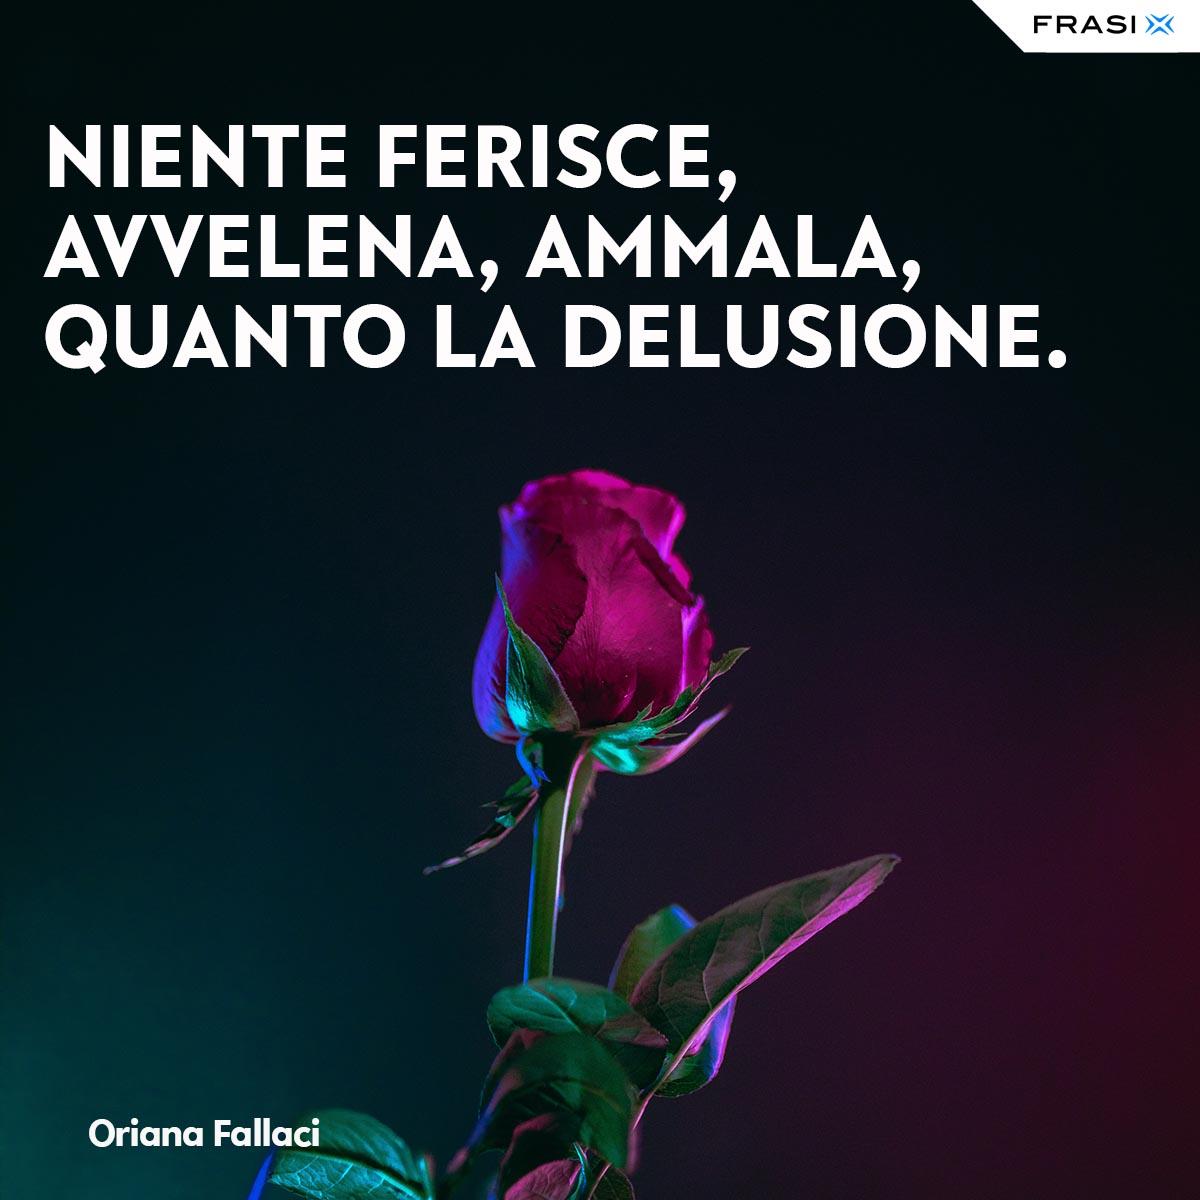 Frasi tumblr tristi Oriana Fallaci